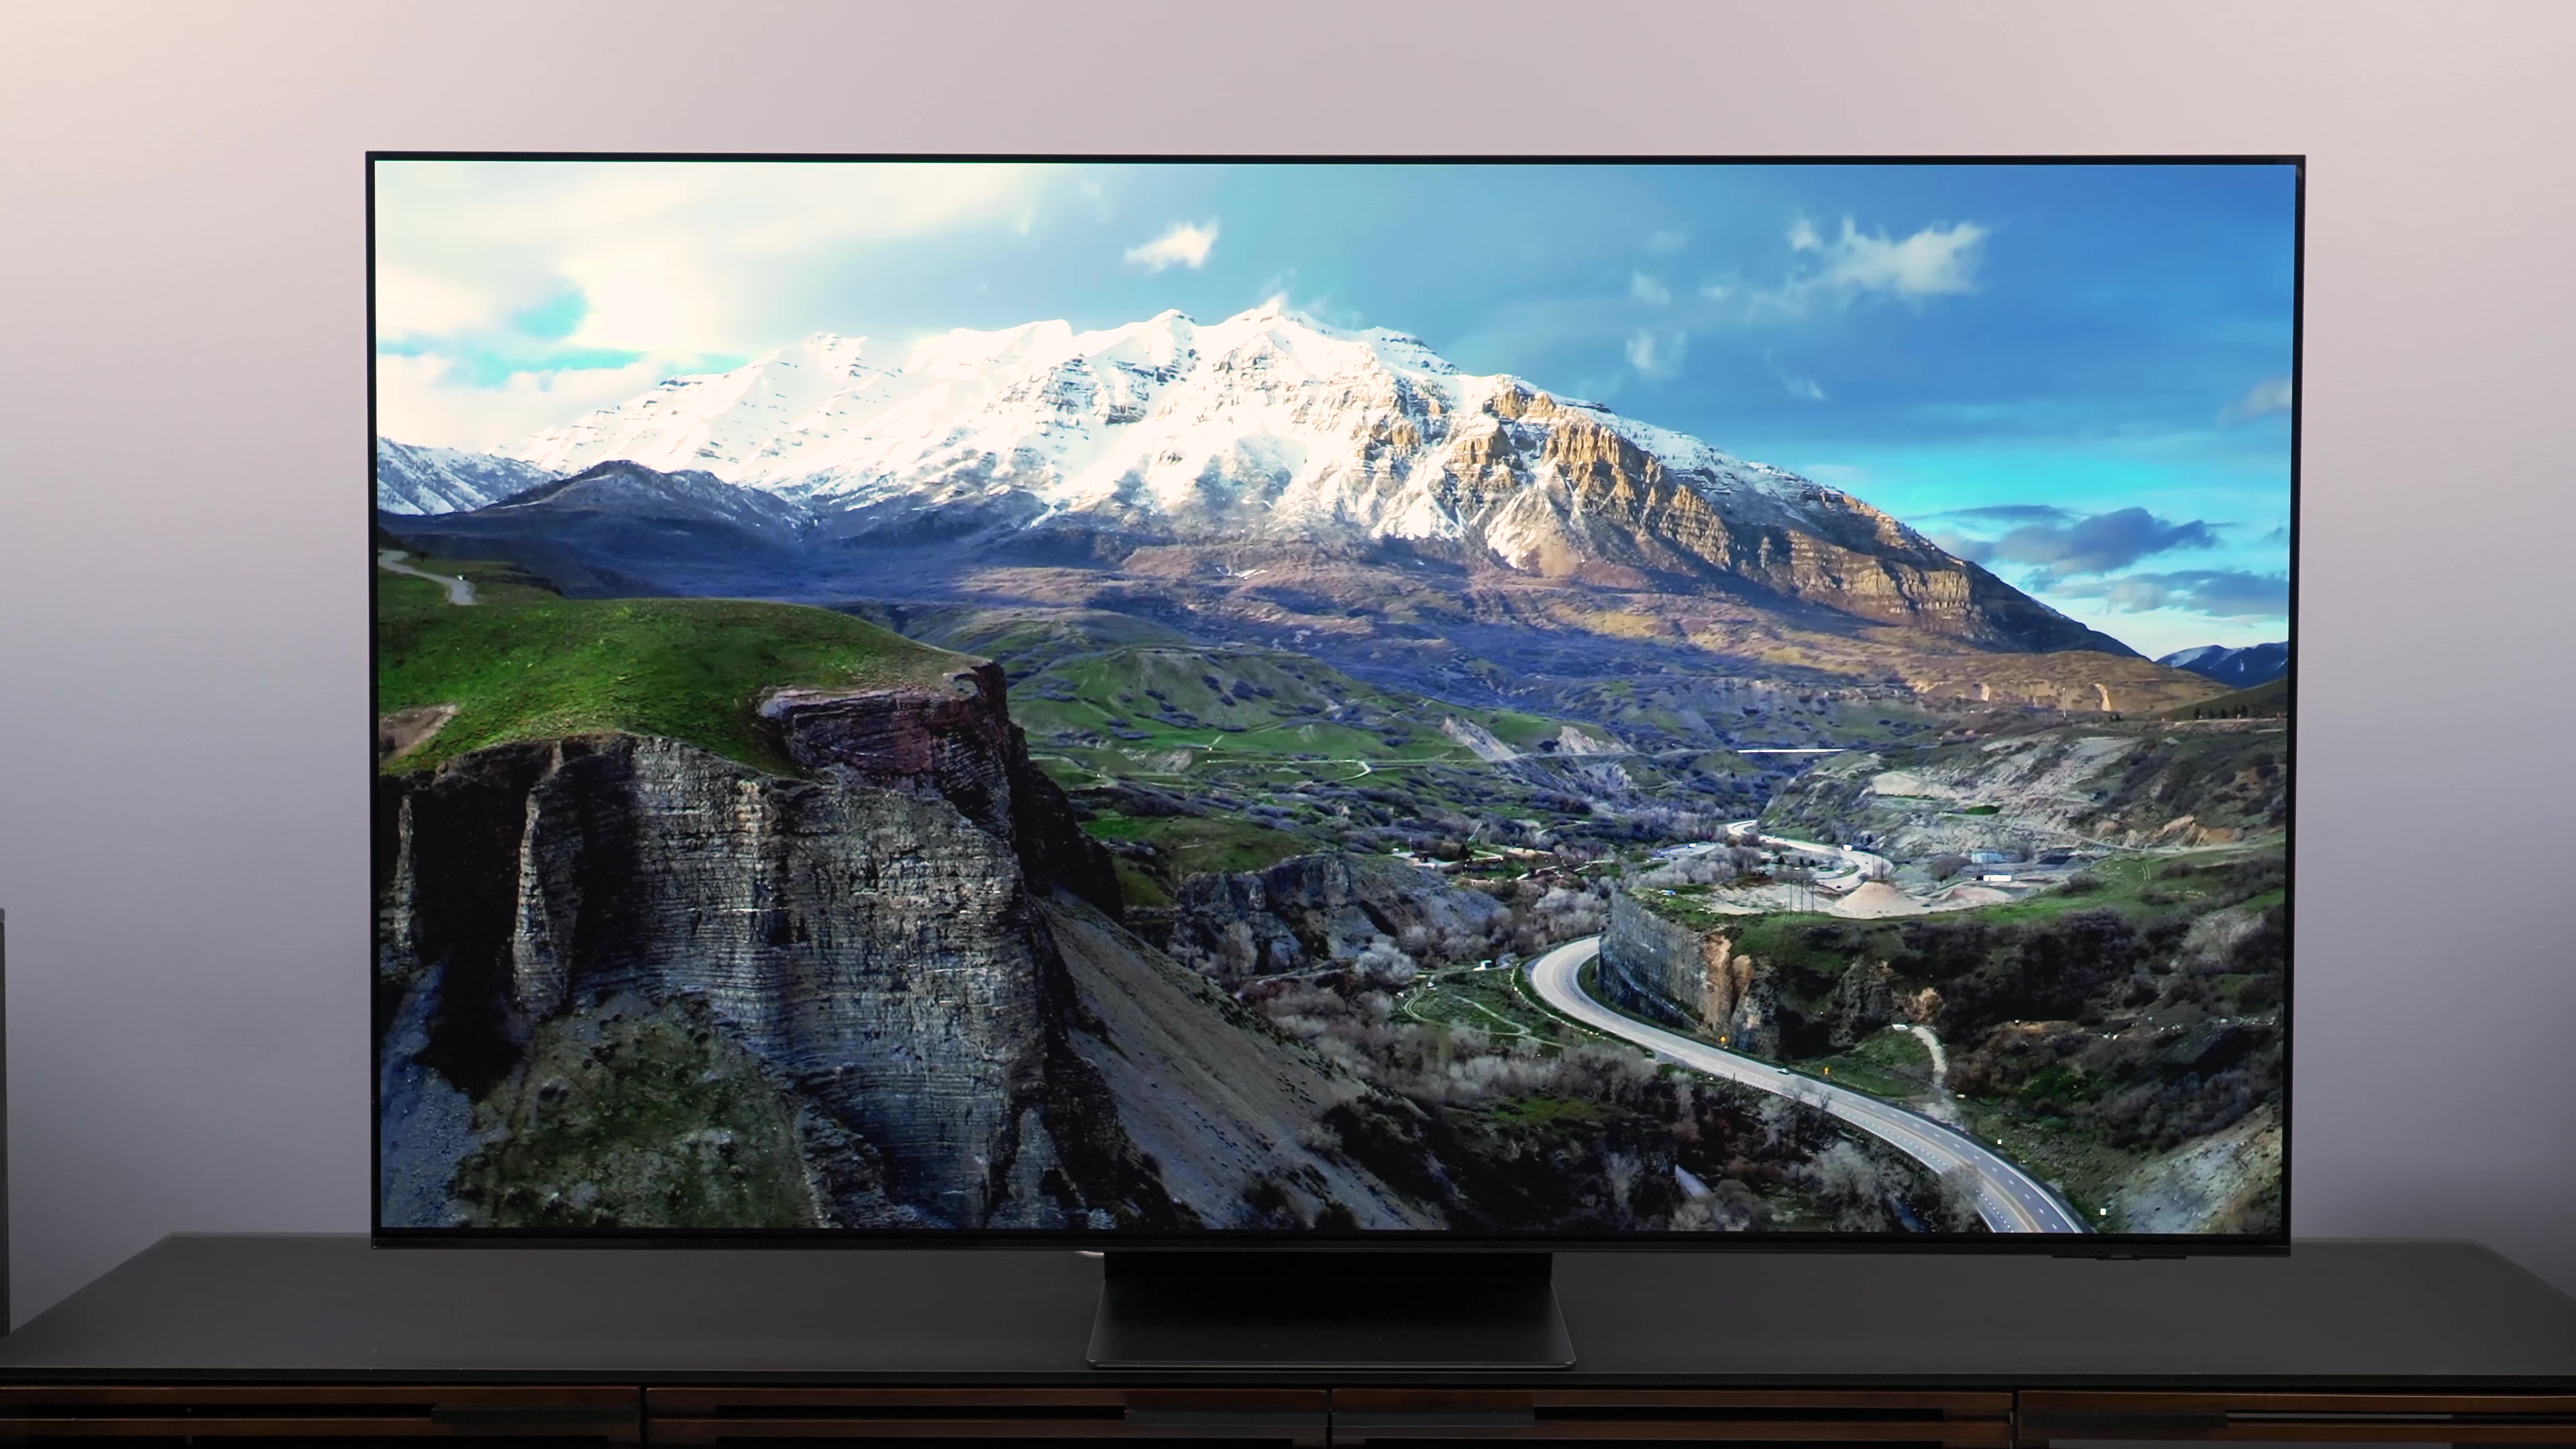 Samsung lo vuelve a hacer con sus cupones. Tener una smart TV con panel  OLED y 4K puede salirte hoy mucho más barata